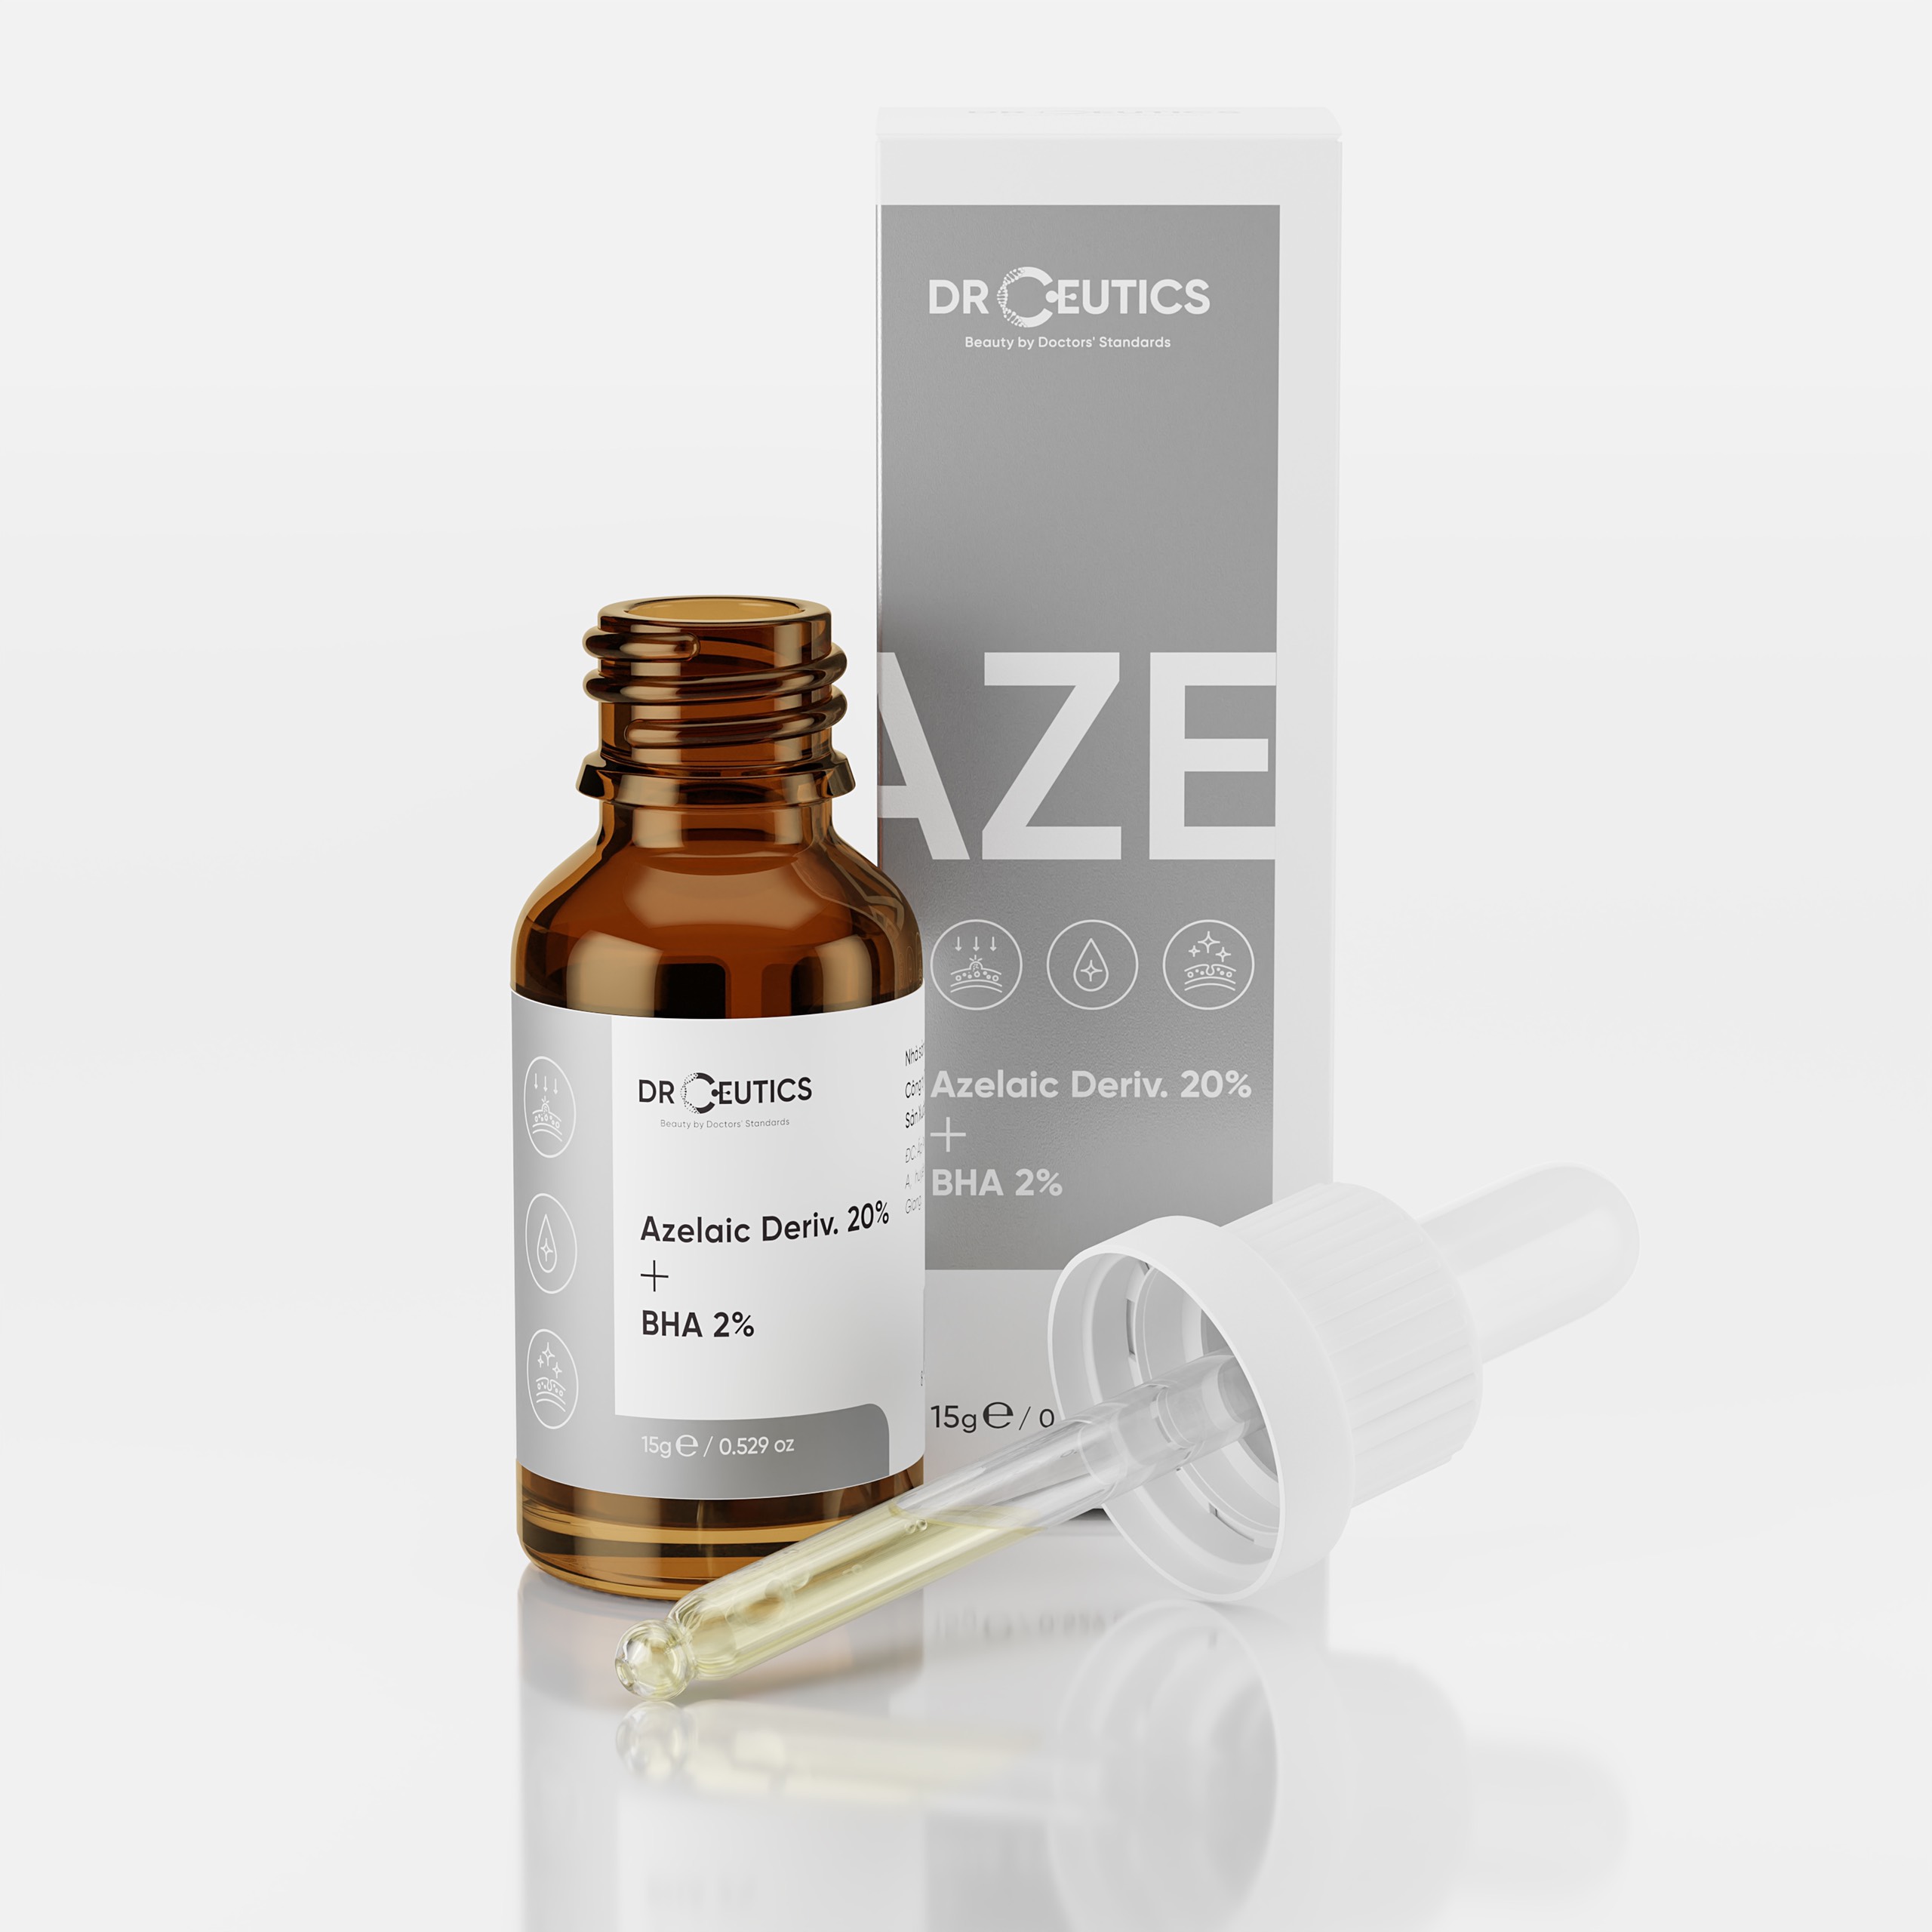 Review DrCeutics Azelaic kết cấu lỏng nhẹ, không gây bết dính